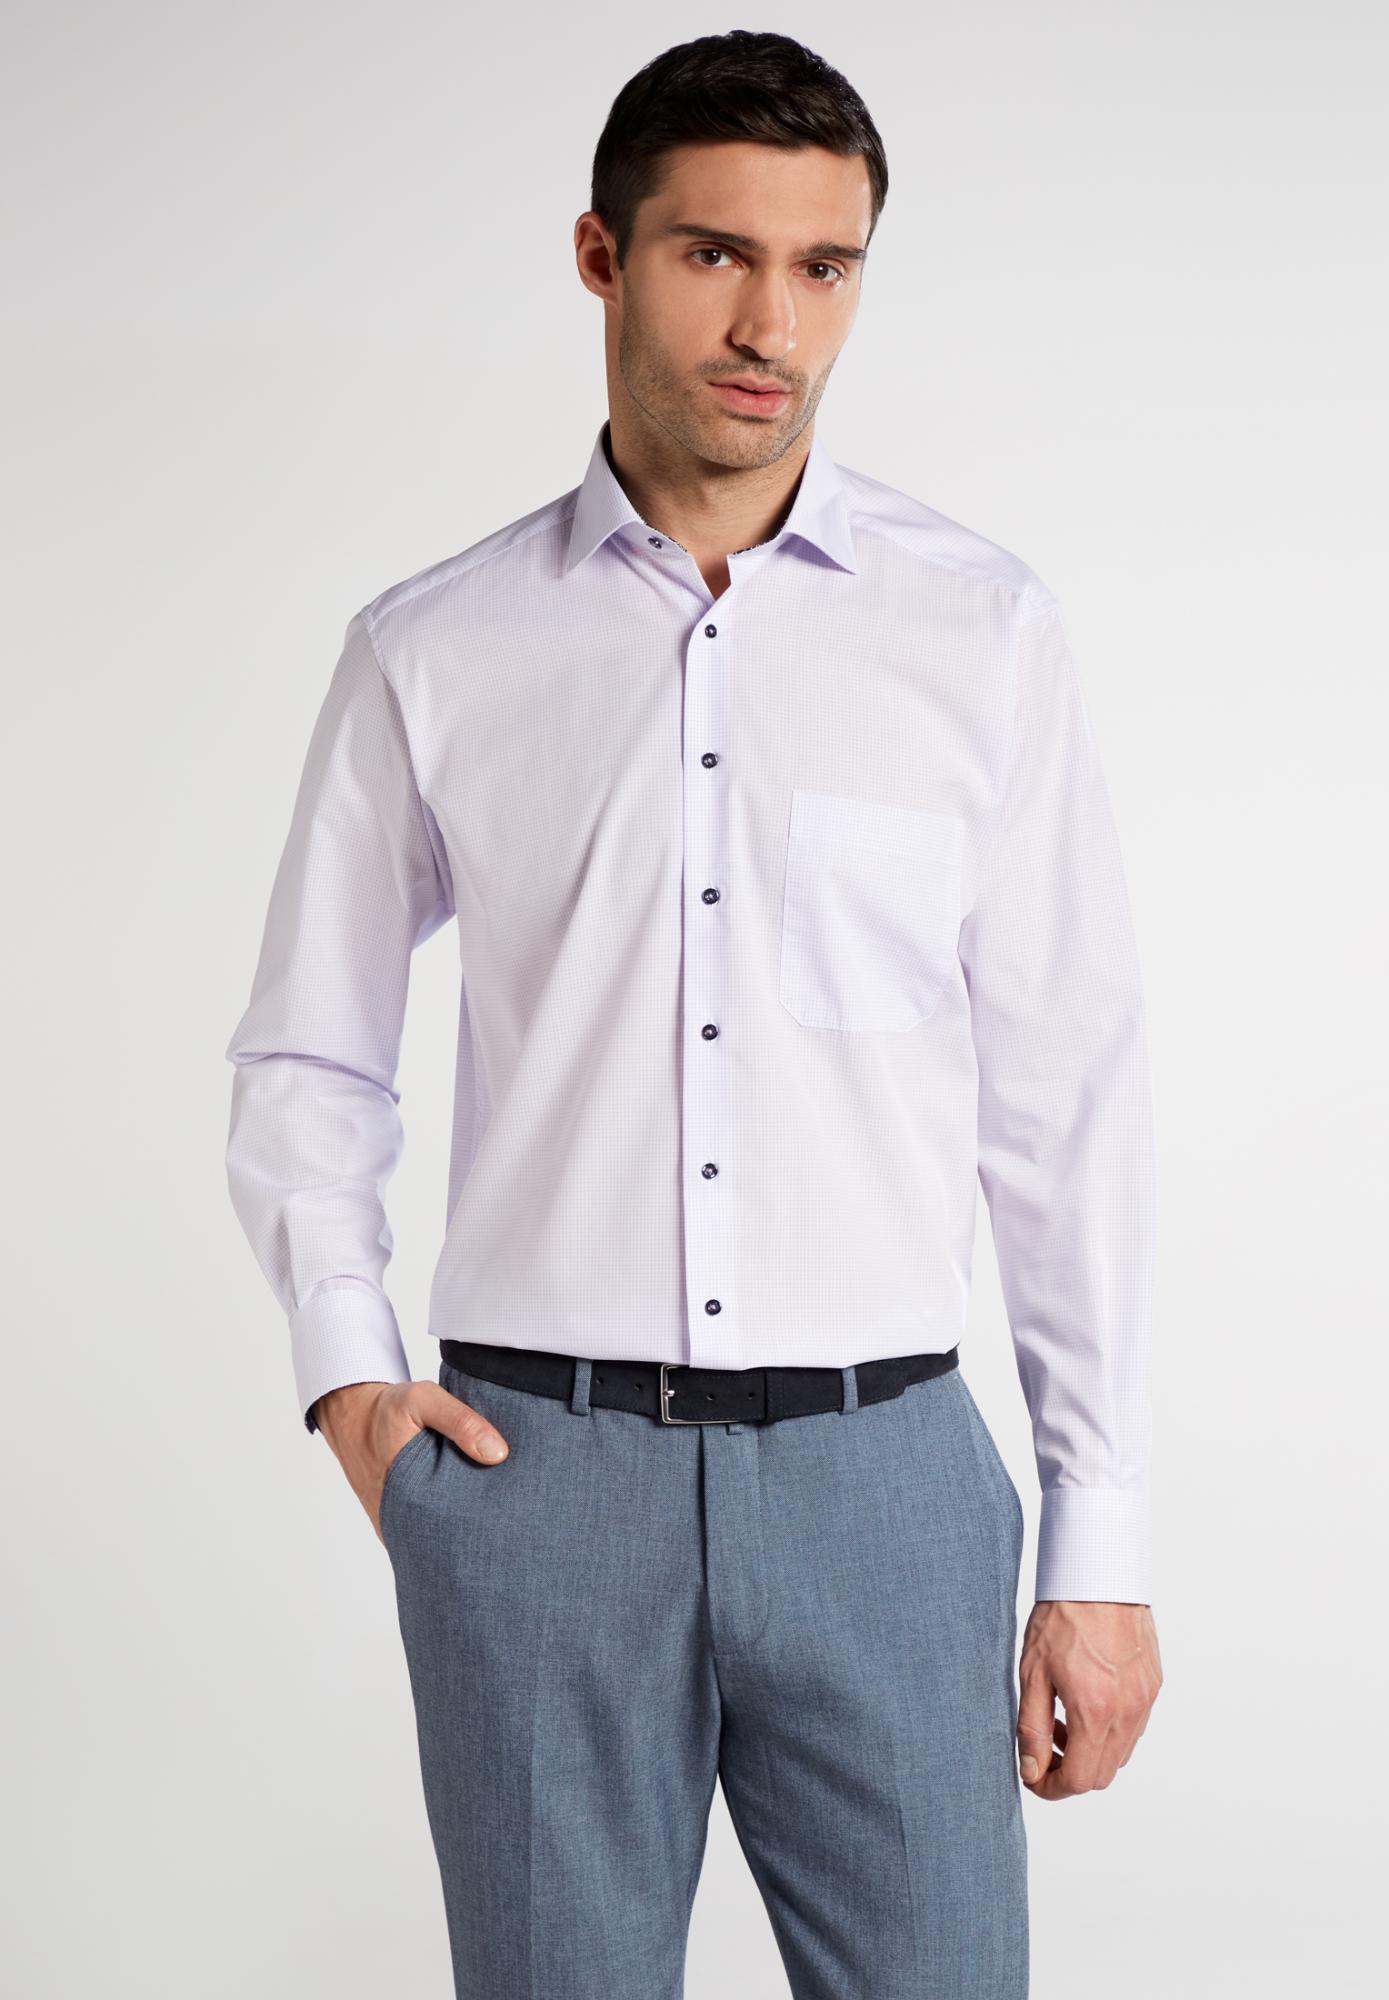 Мужская рубашка ETERNA, белая, цвет белый, размер 46 - фото 1